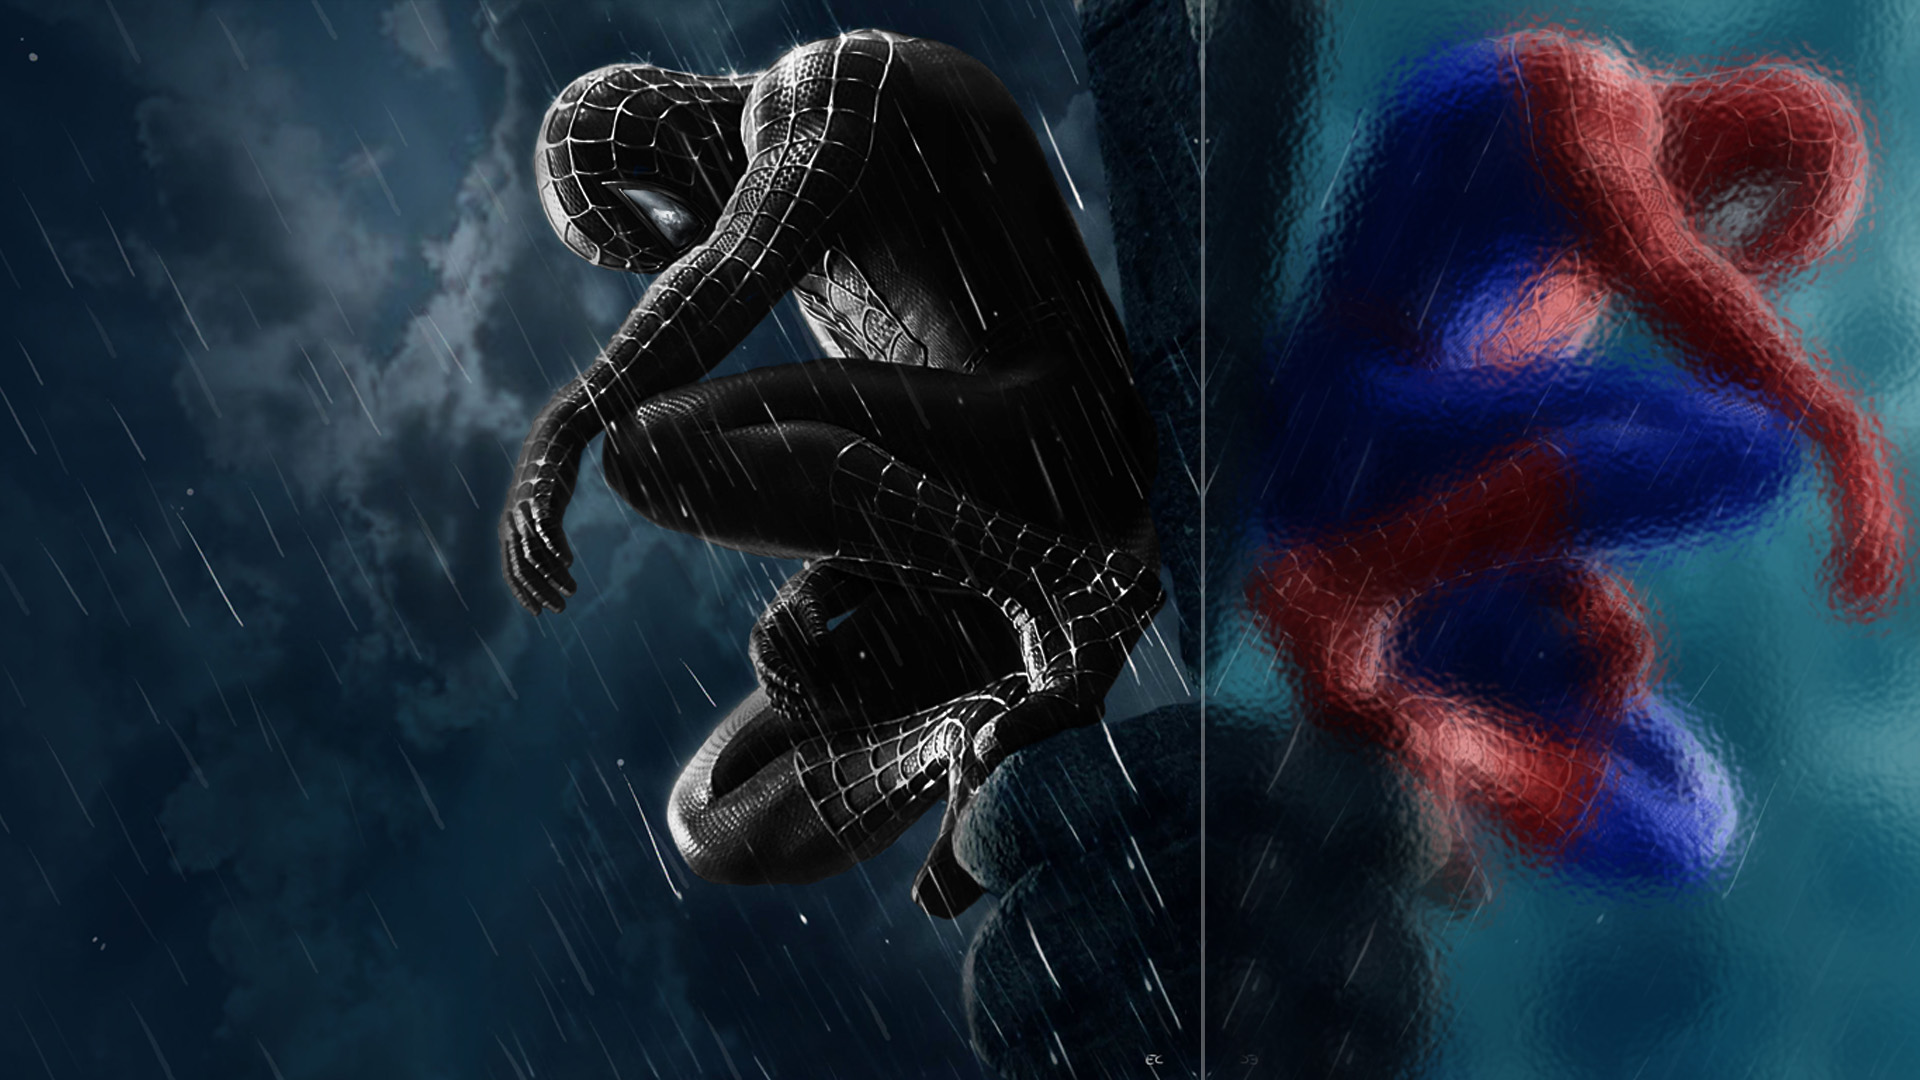 fond d'écran noir spiderman,oeuvre de cg,personnage fictif,conception graphique,espace,compositing numérique